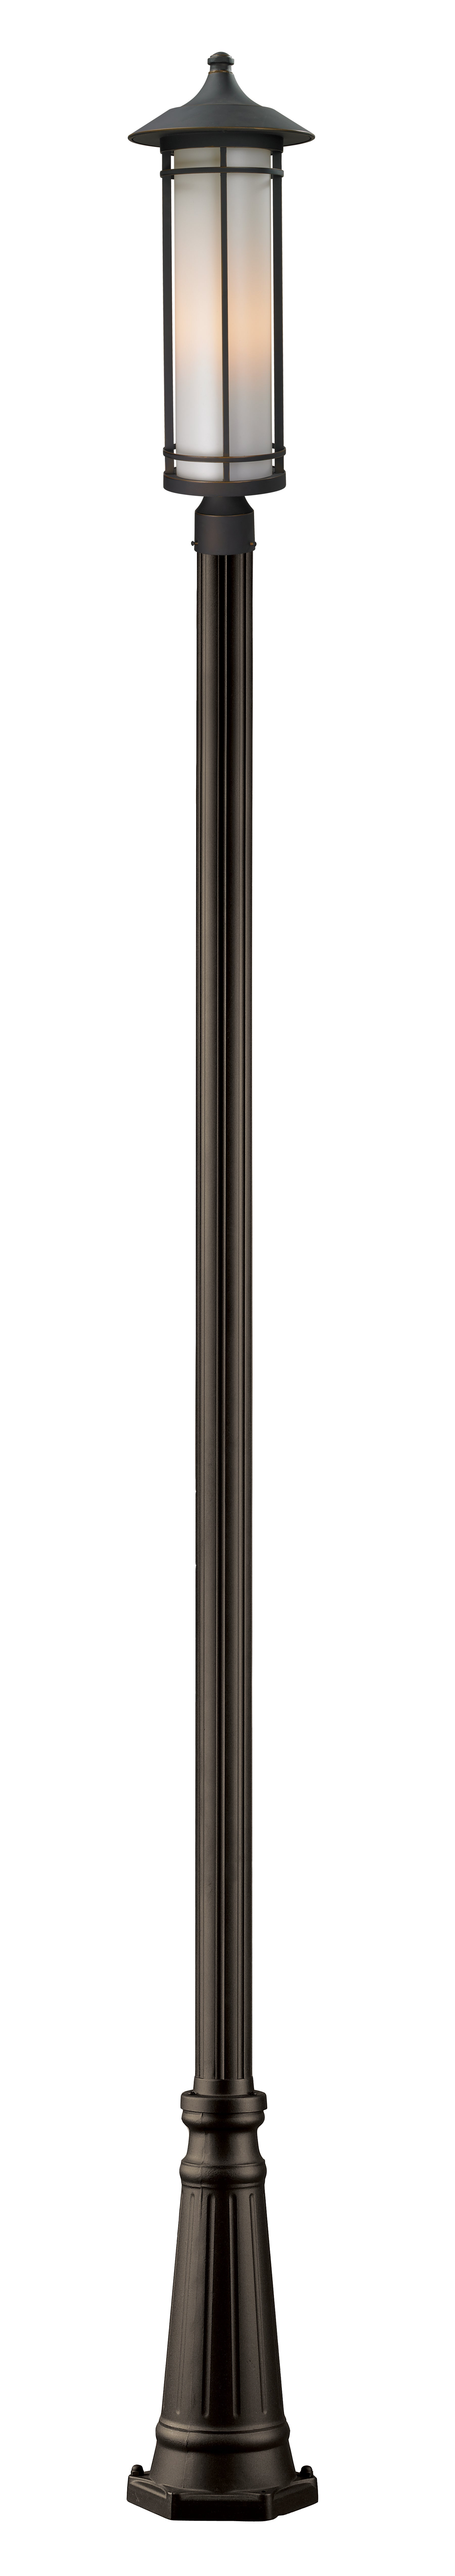 WOODLAND Luminaire sur poteau Bronze - 530PHB-519P-ORB | Z-LITE